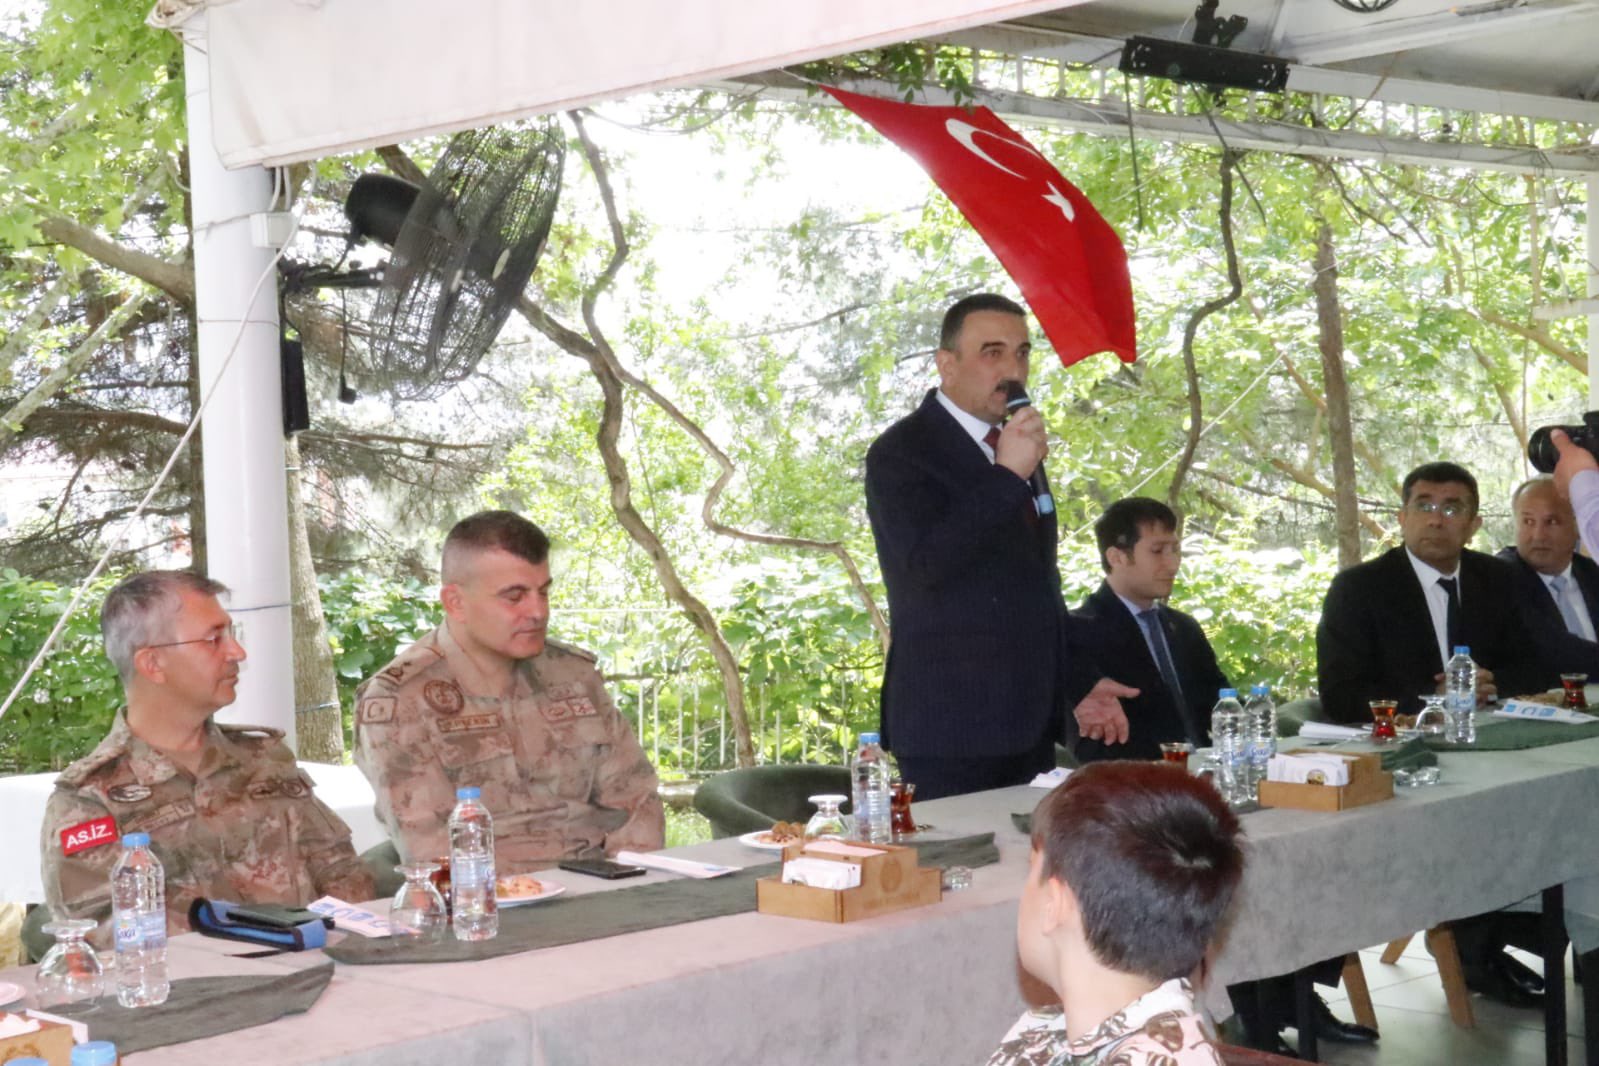 Siirt’te Resmi Bayramlaşma, Vali Hacıbektaşoğlu Vatandaşlarla Görevli Personelin Bayramlarını Kutladı